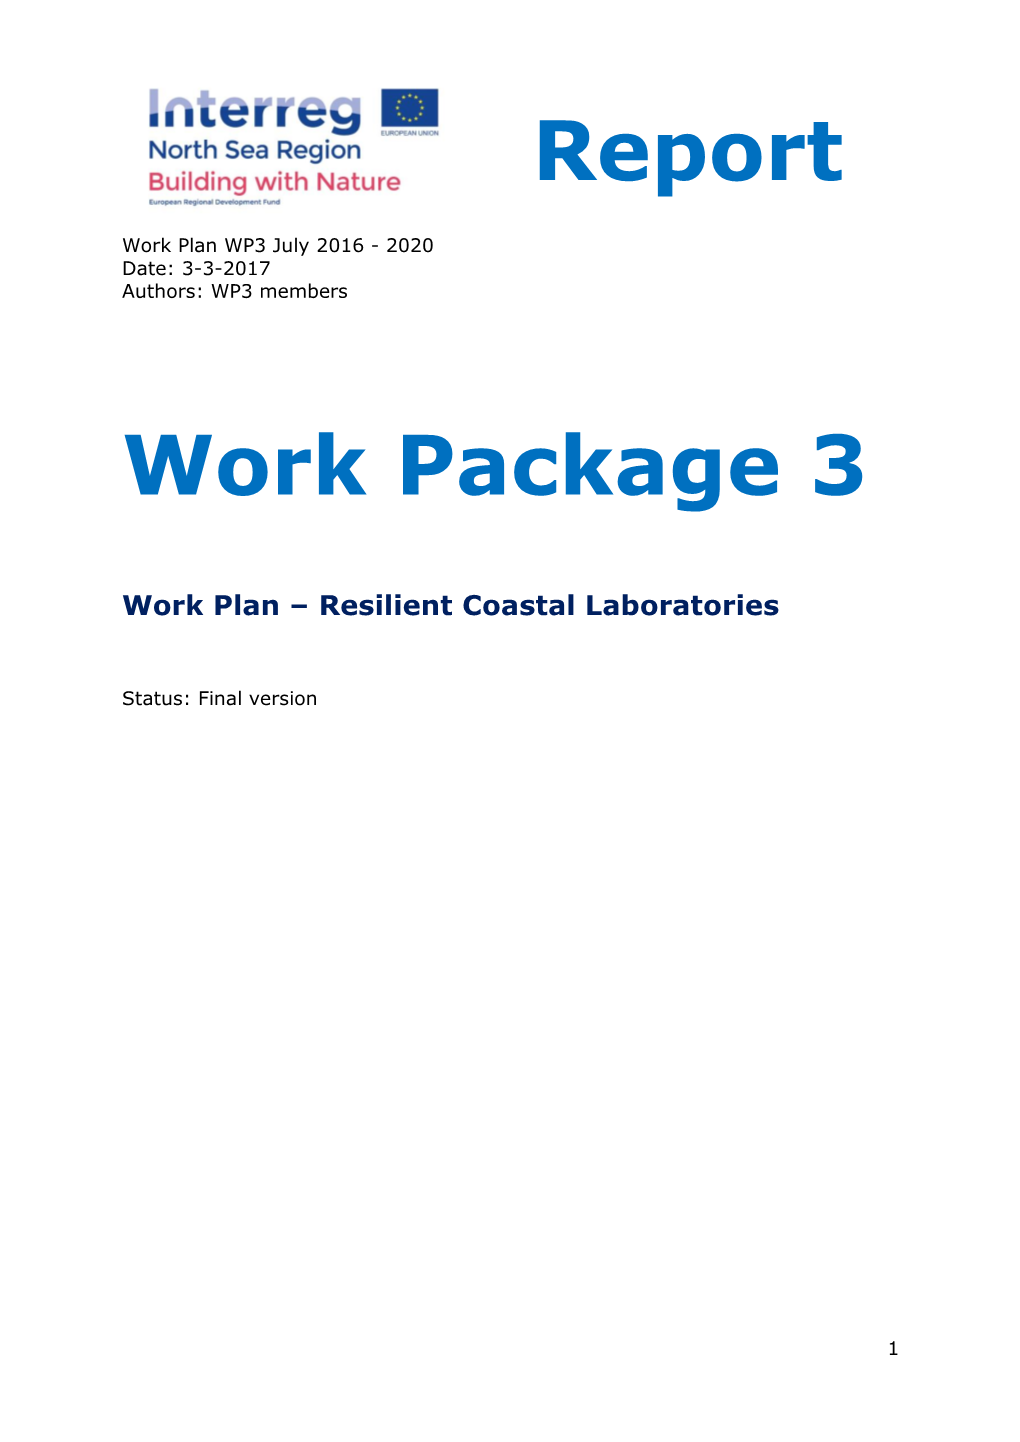 Work Plan of Work Package 3